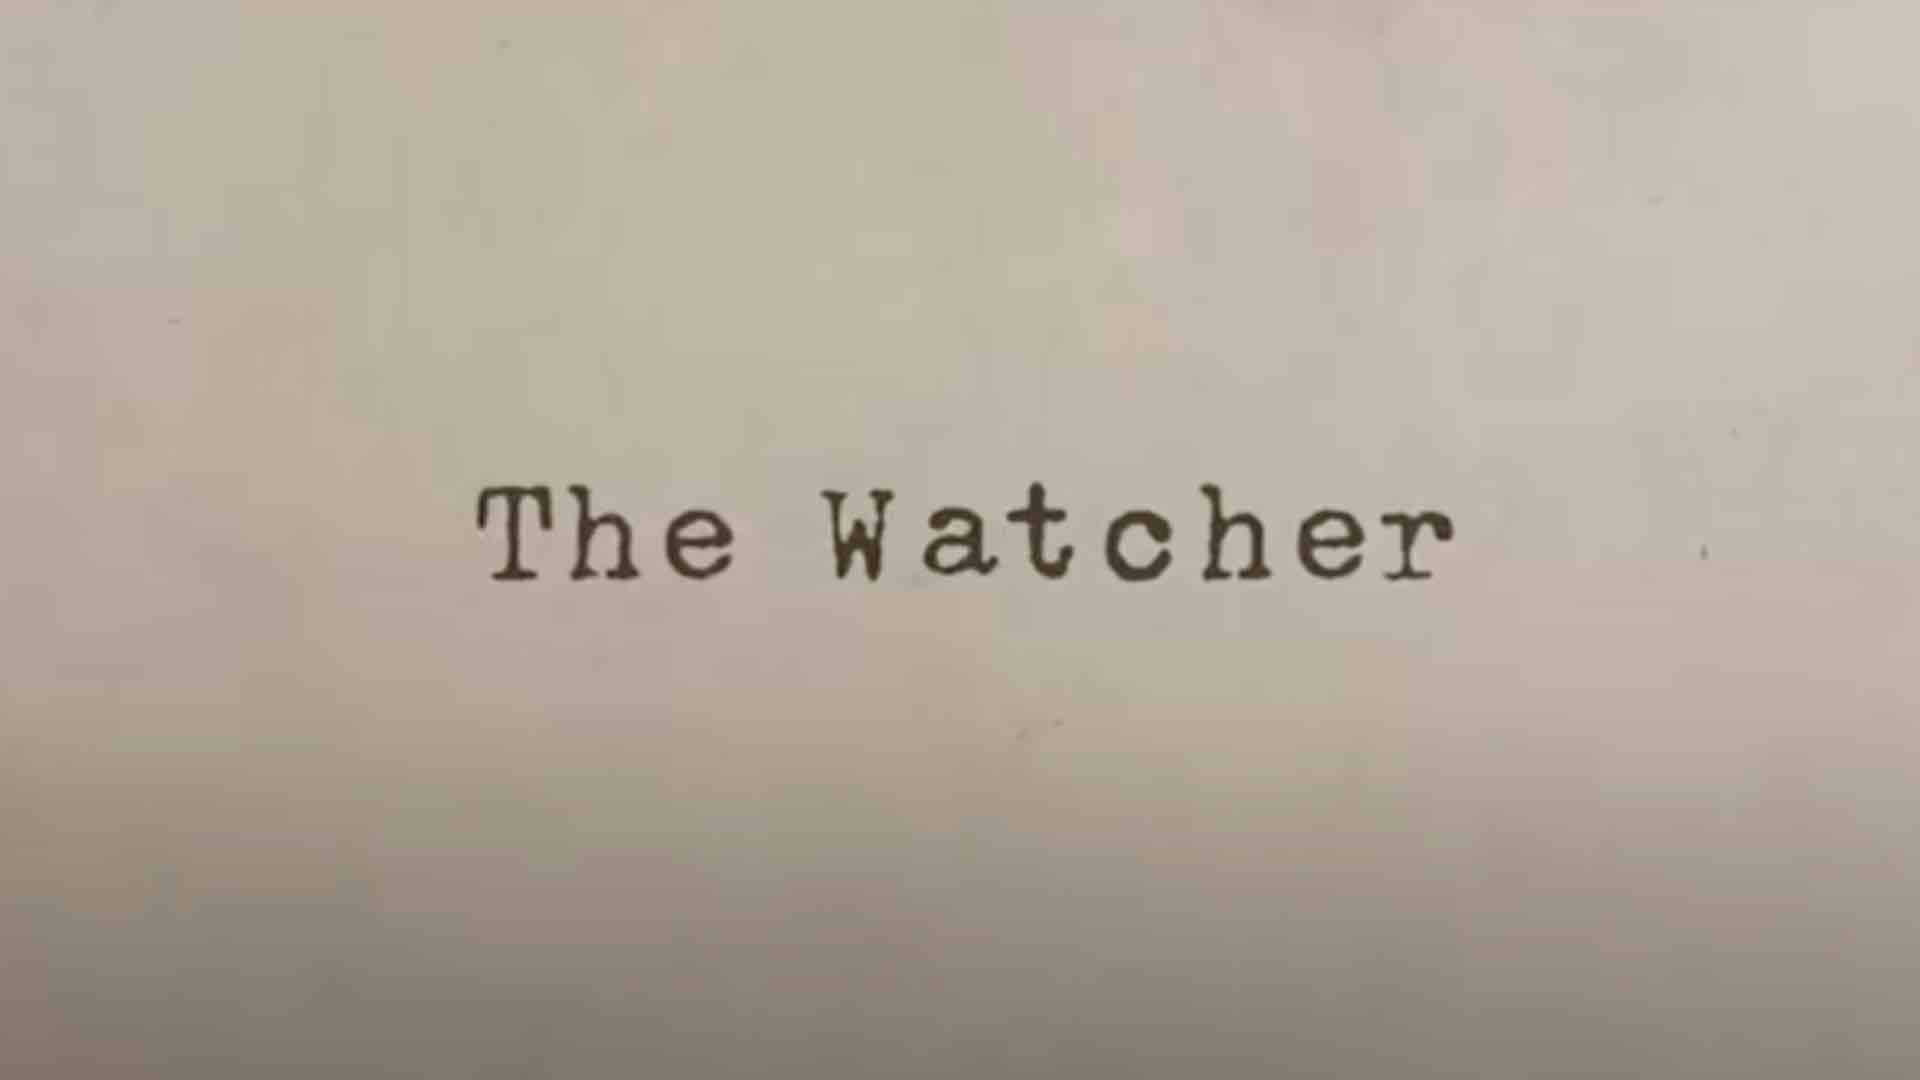 The Watcher Netflix